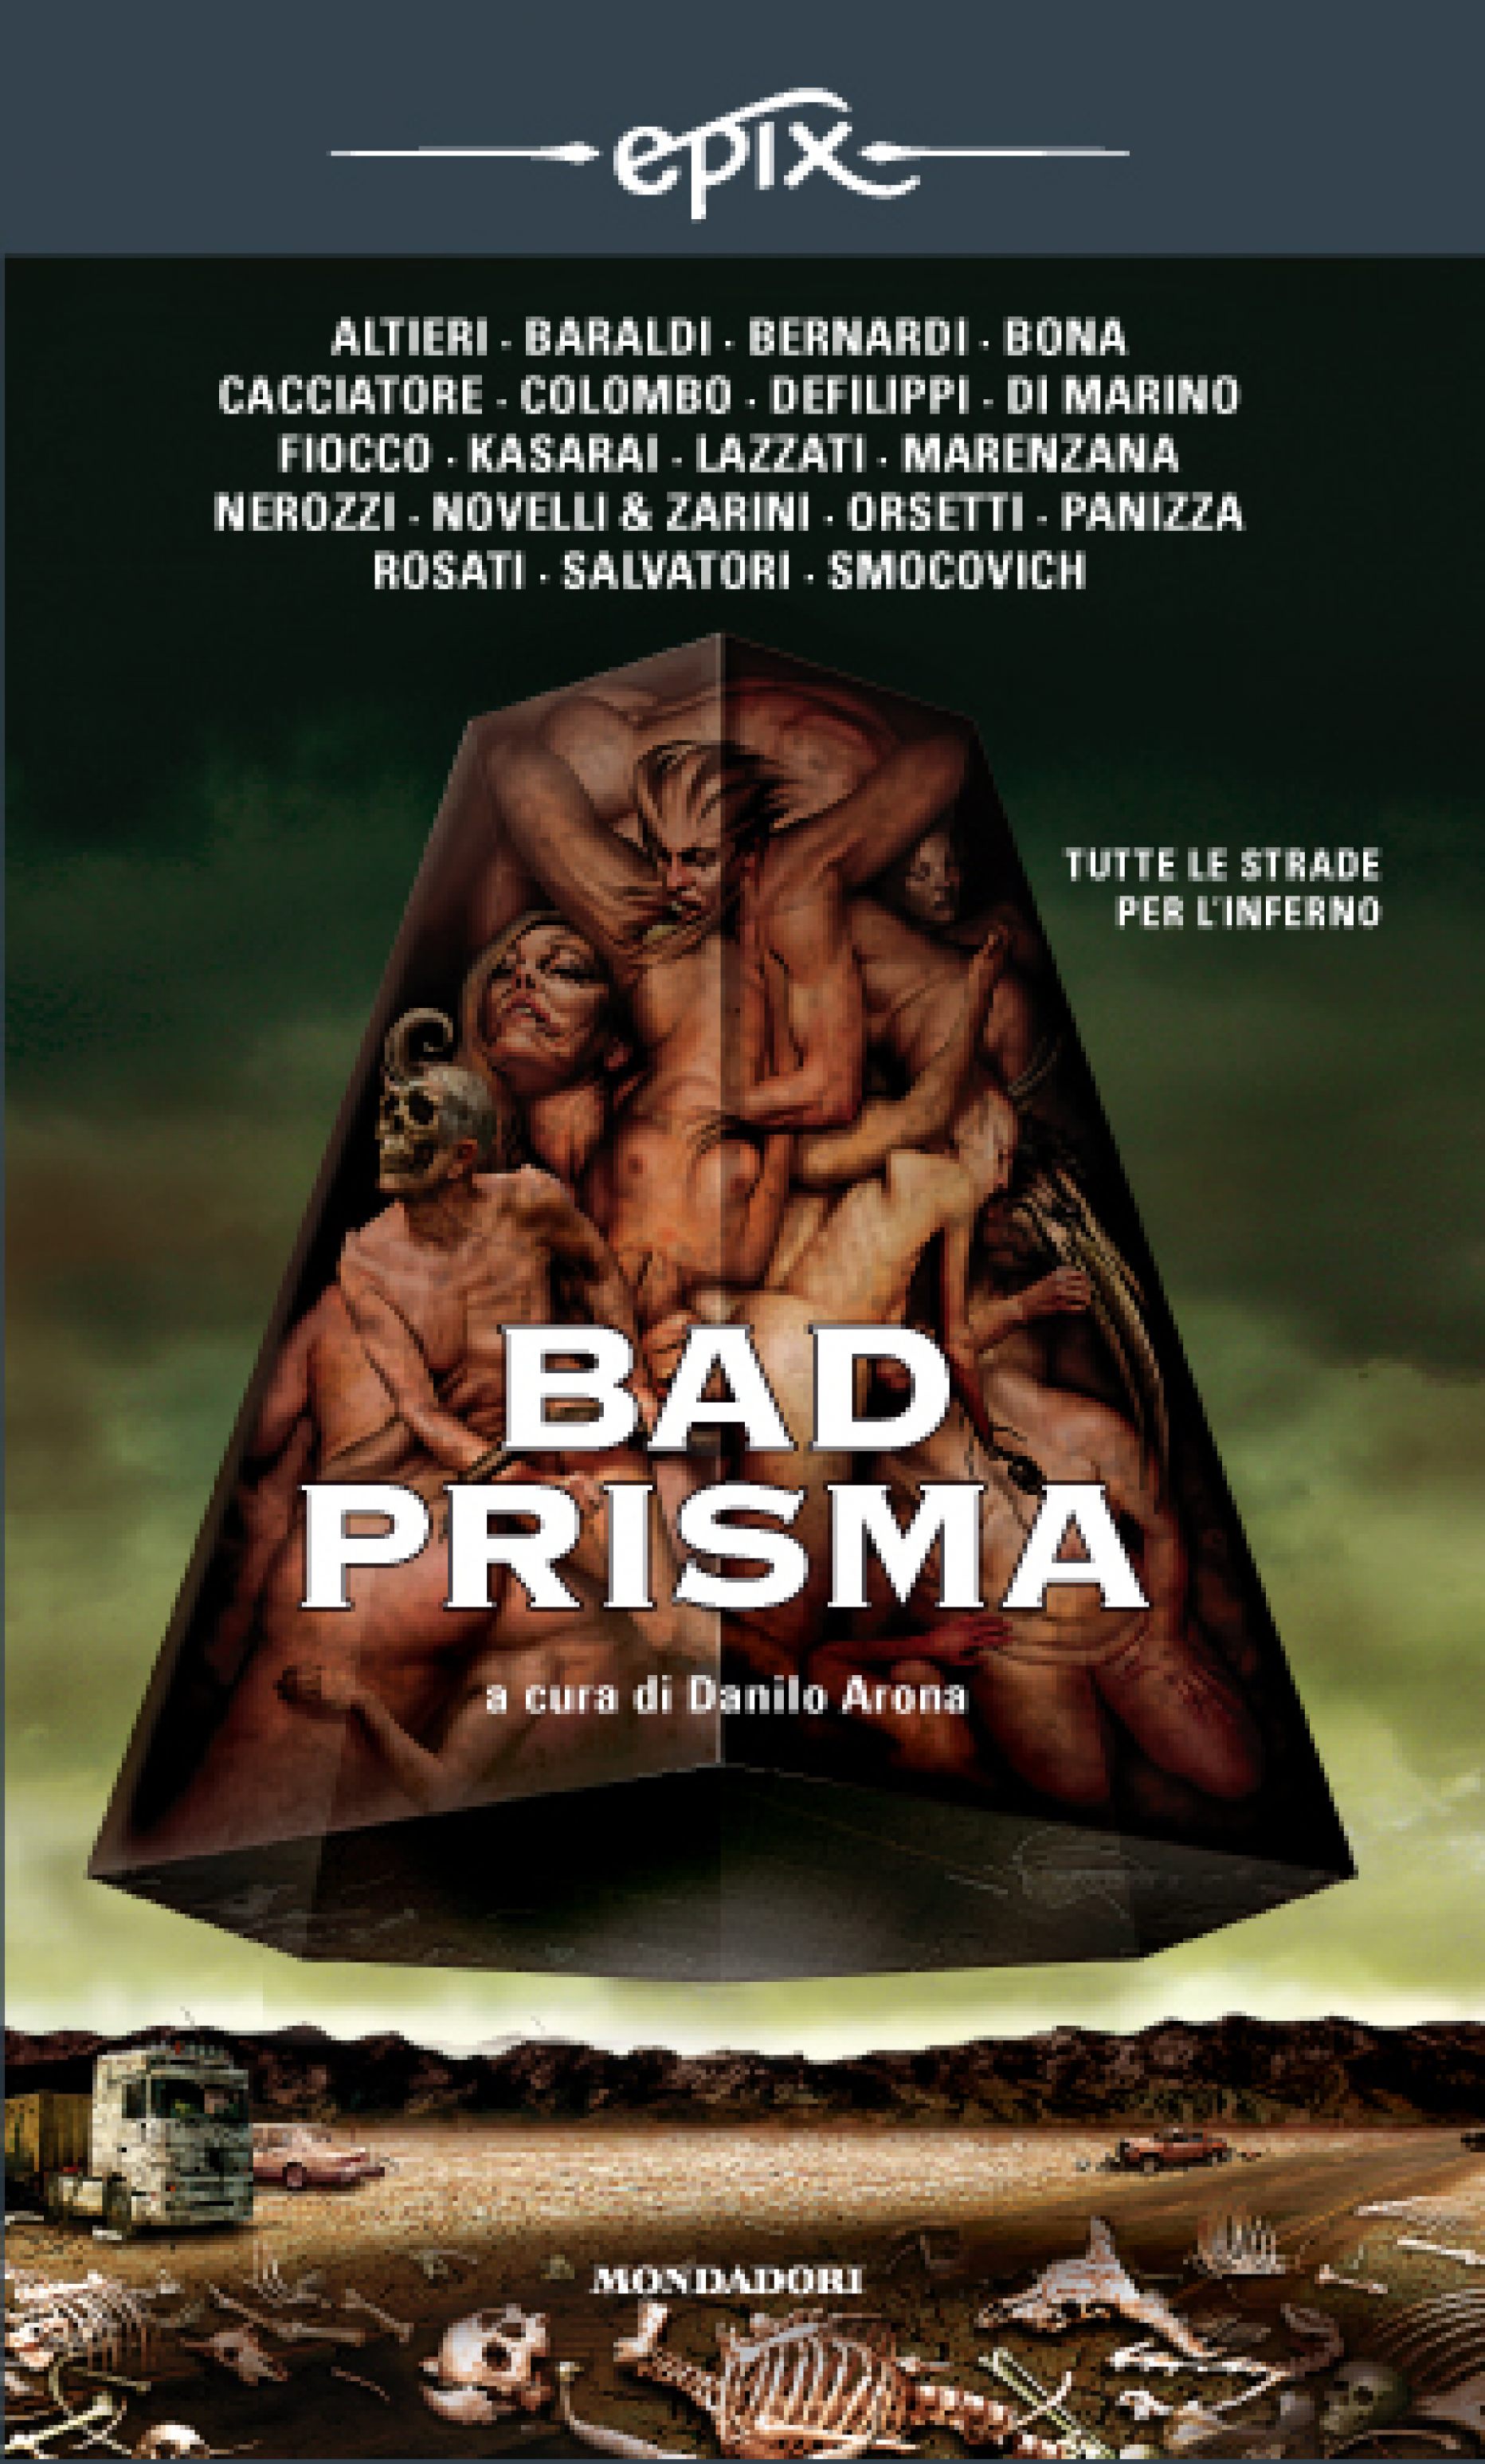 Danilo Arona (a cura di) – Bad Prisma